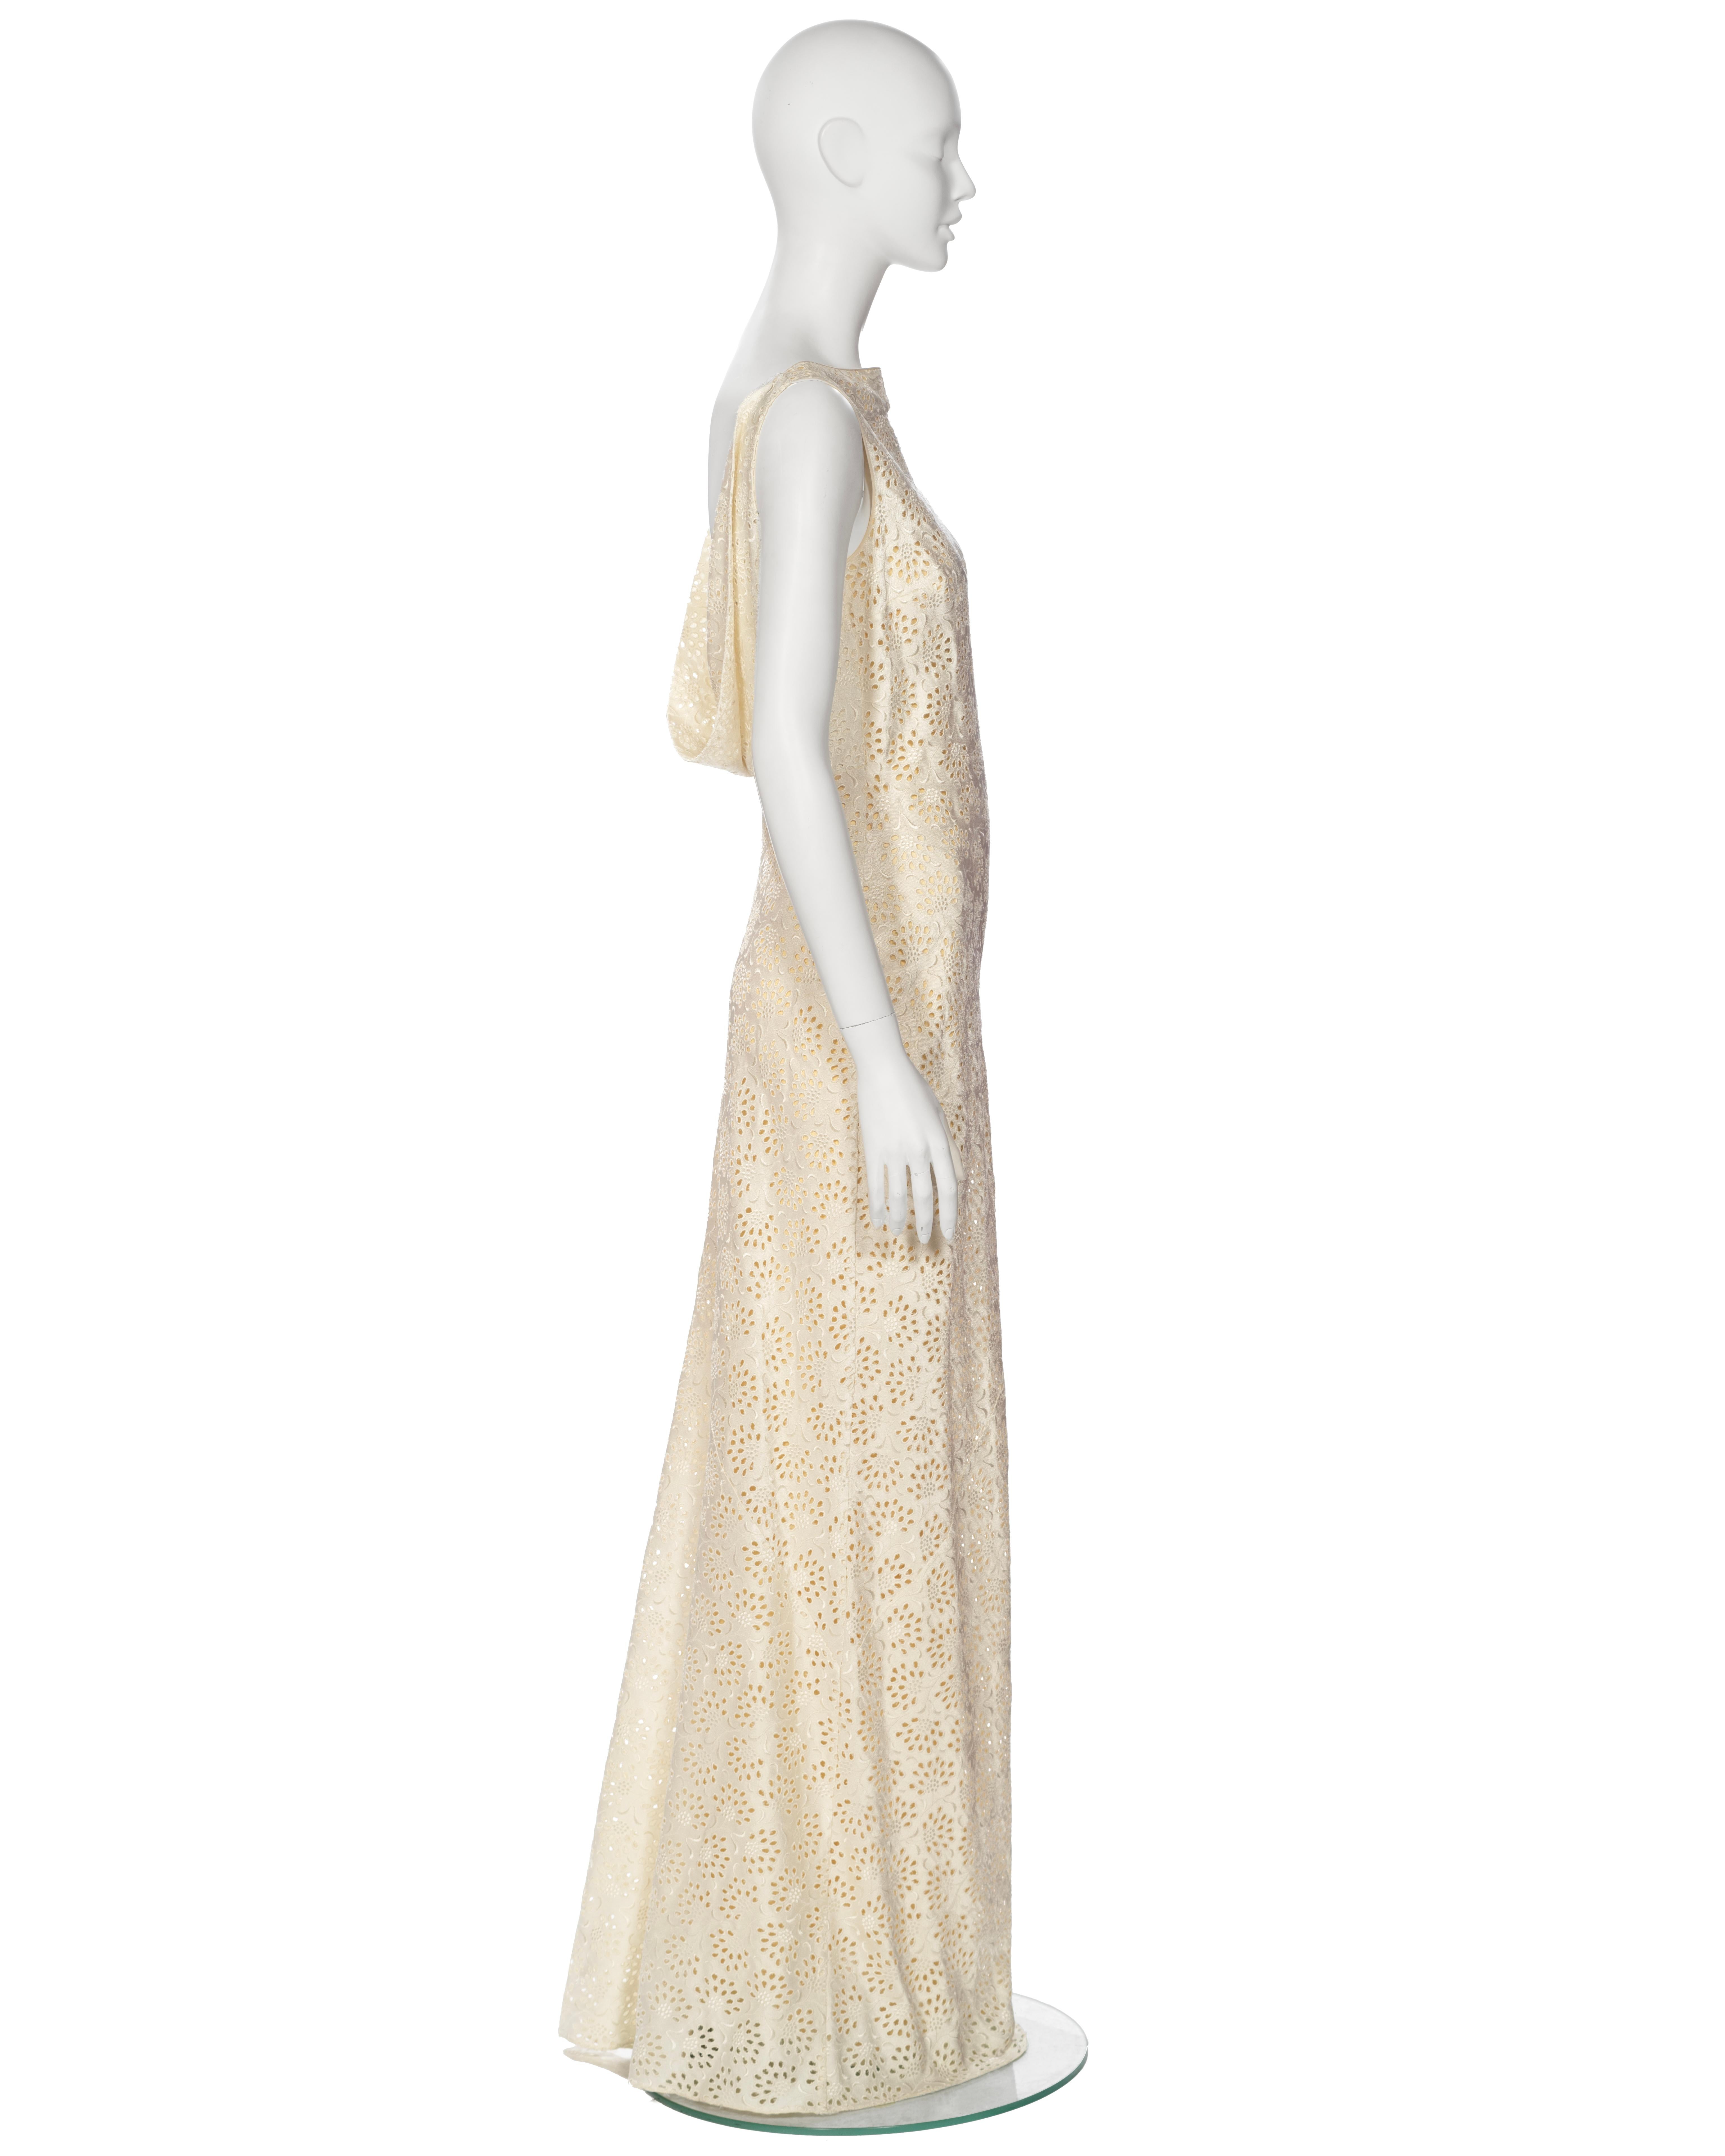 John Galliano 'L'Ecole de Danse' Ivory Satin Cutwork Formal Dress, ss 1996 For Sale 3